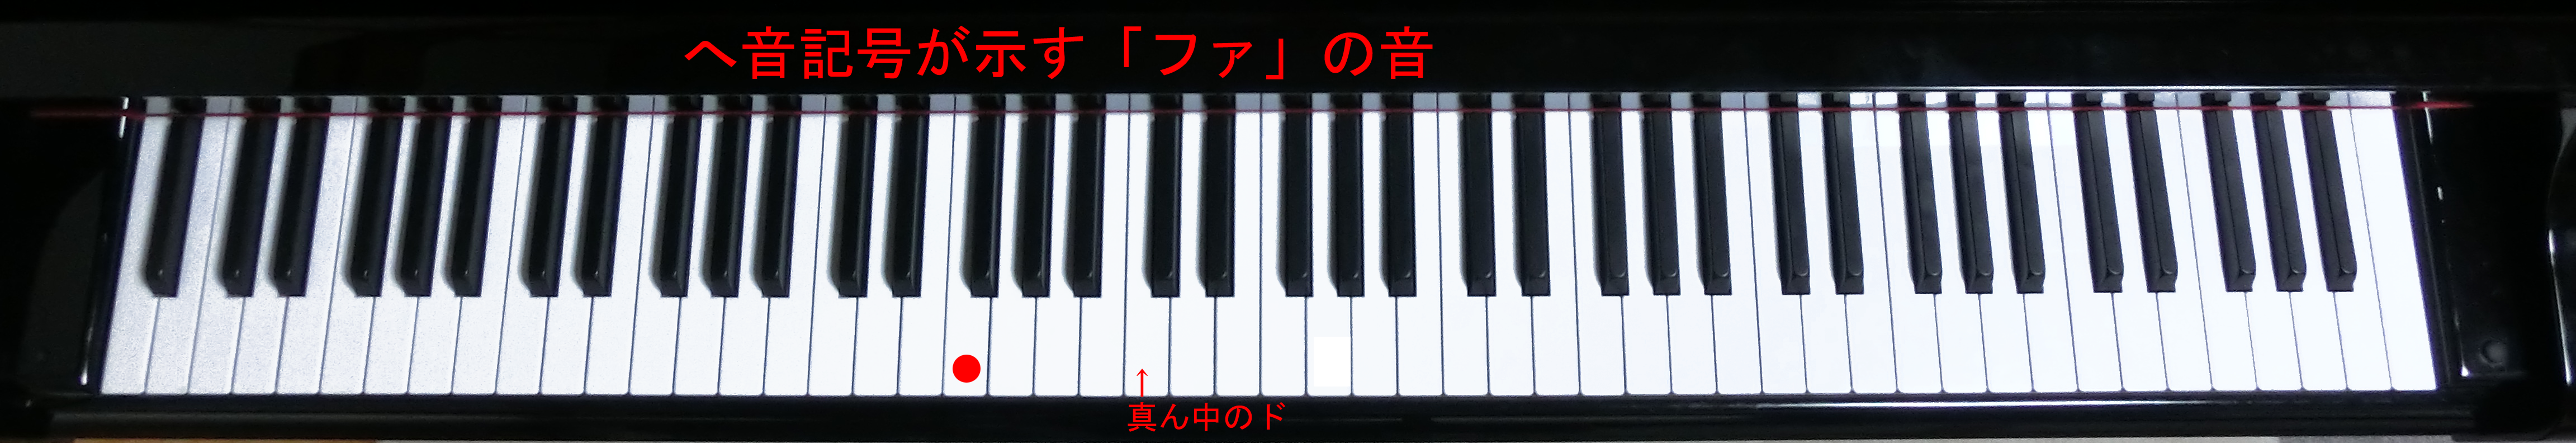 ピアノの鍵盤上のヘ音記号の示すファ